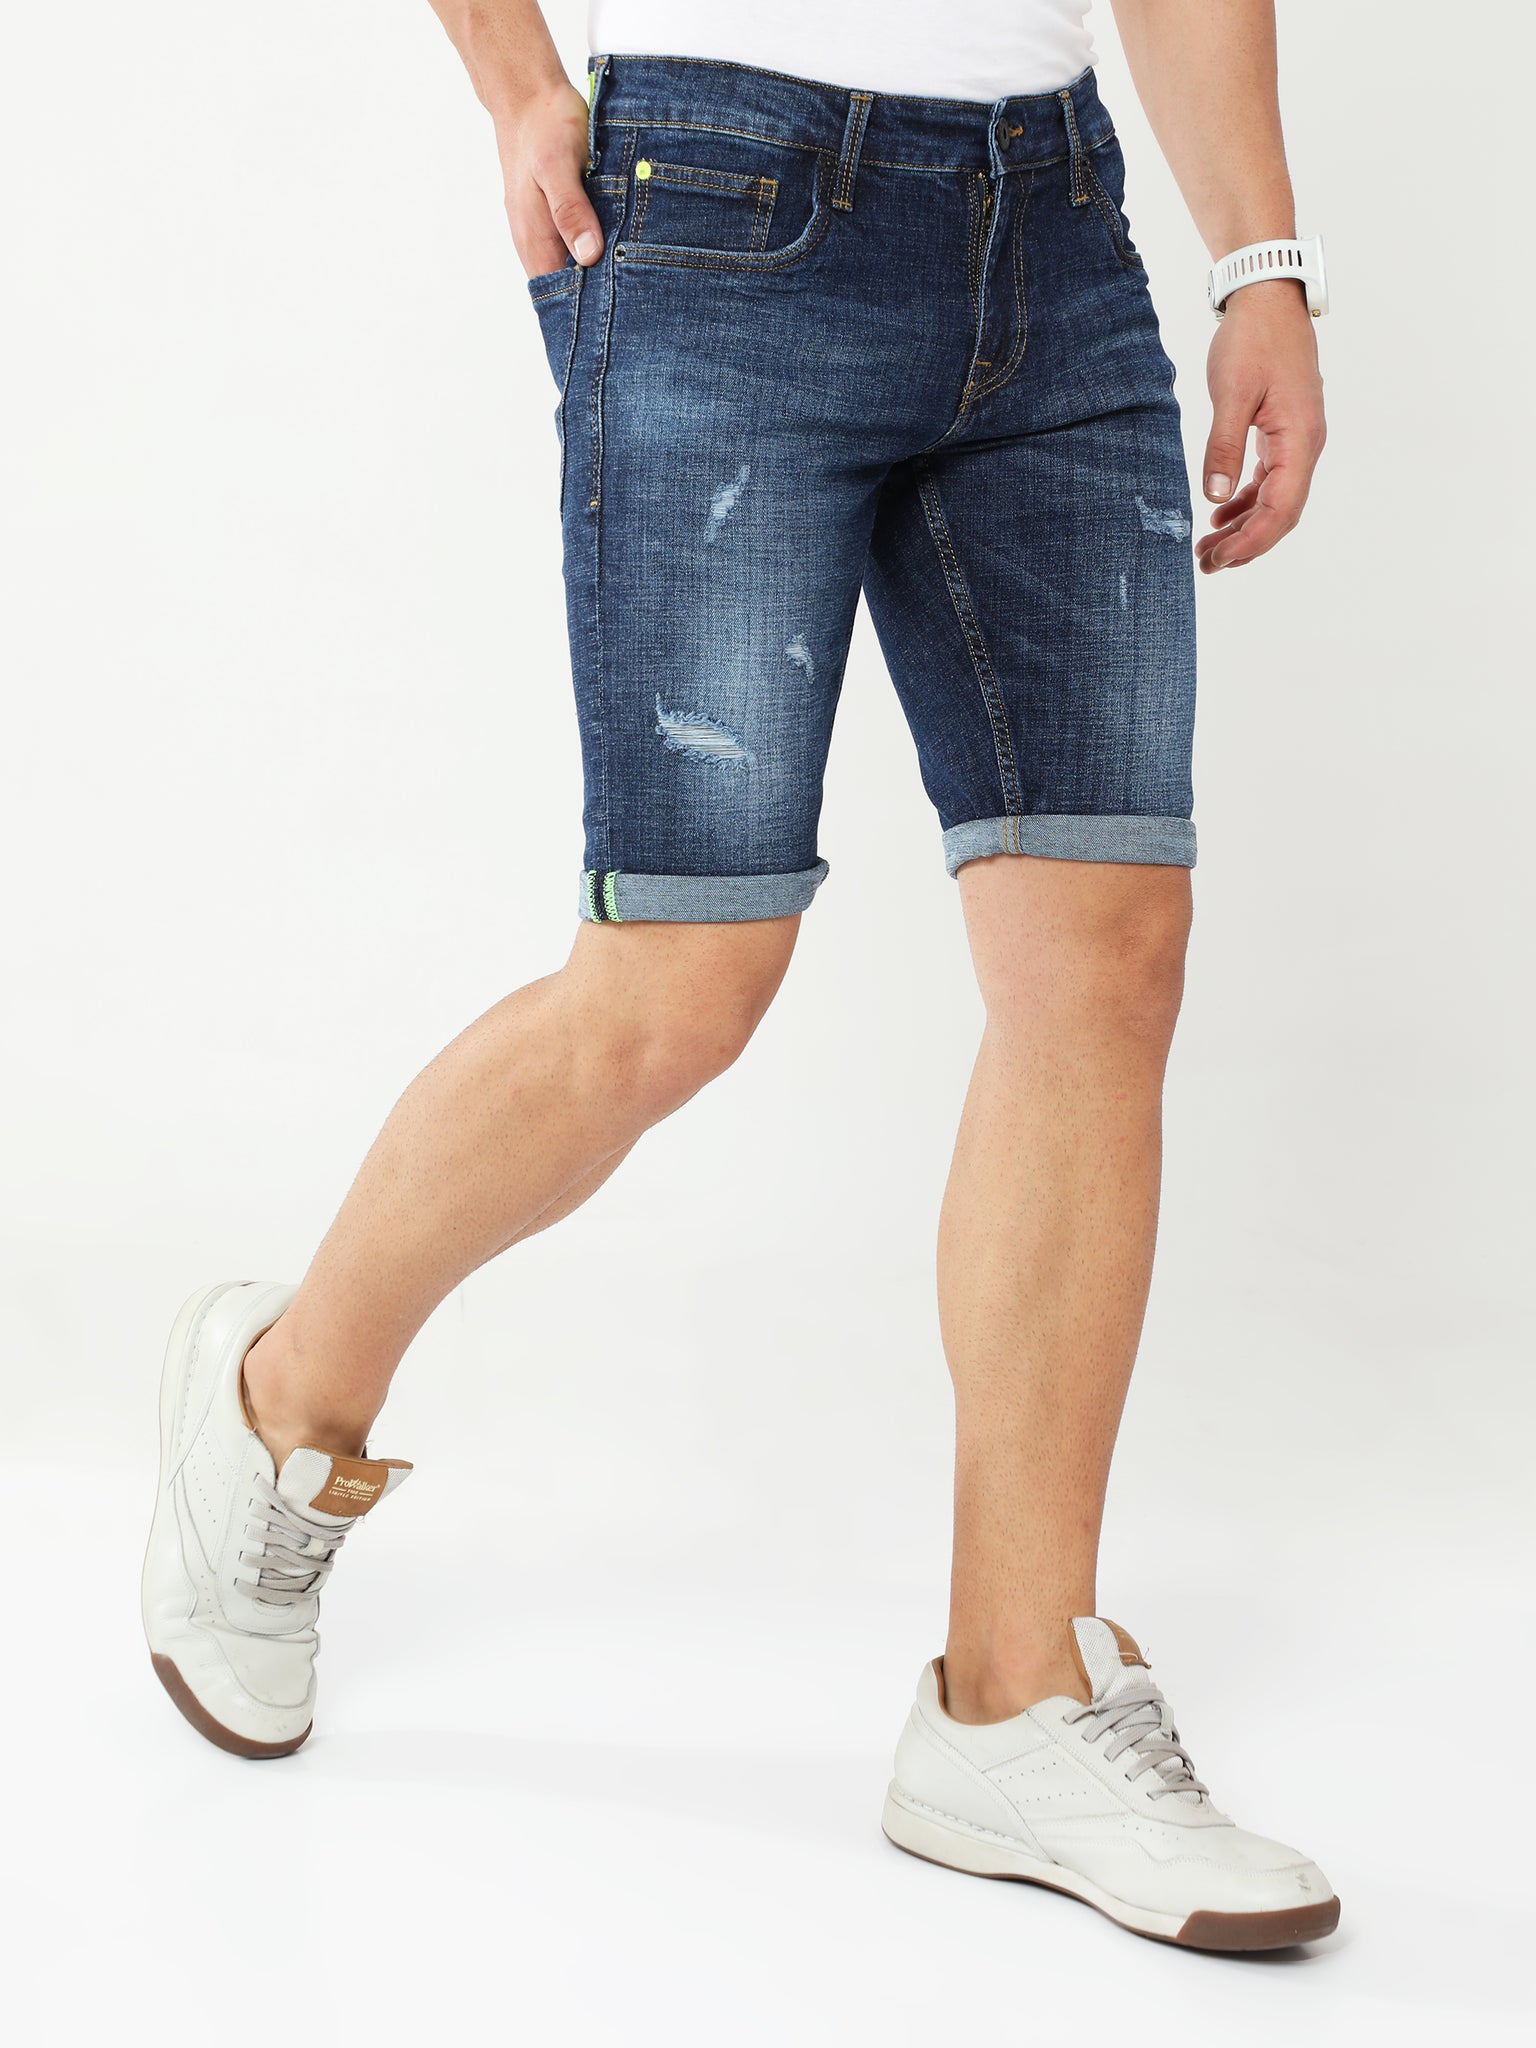 Aegean Blue Denim Shorts